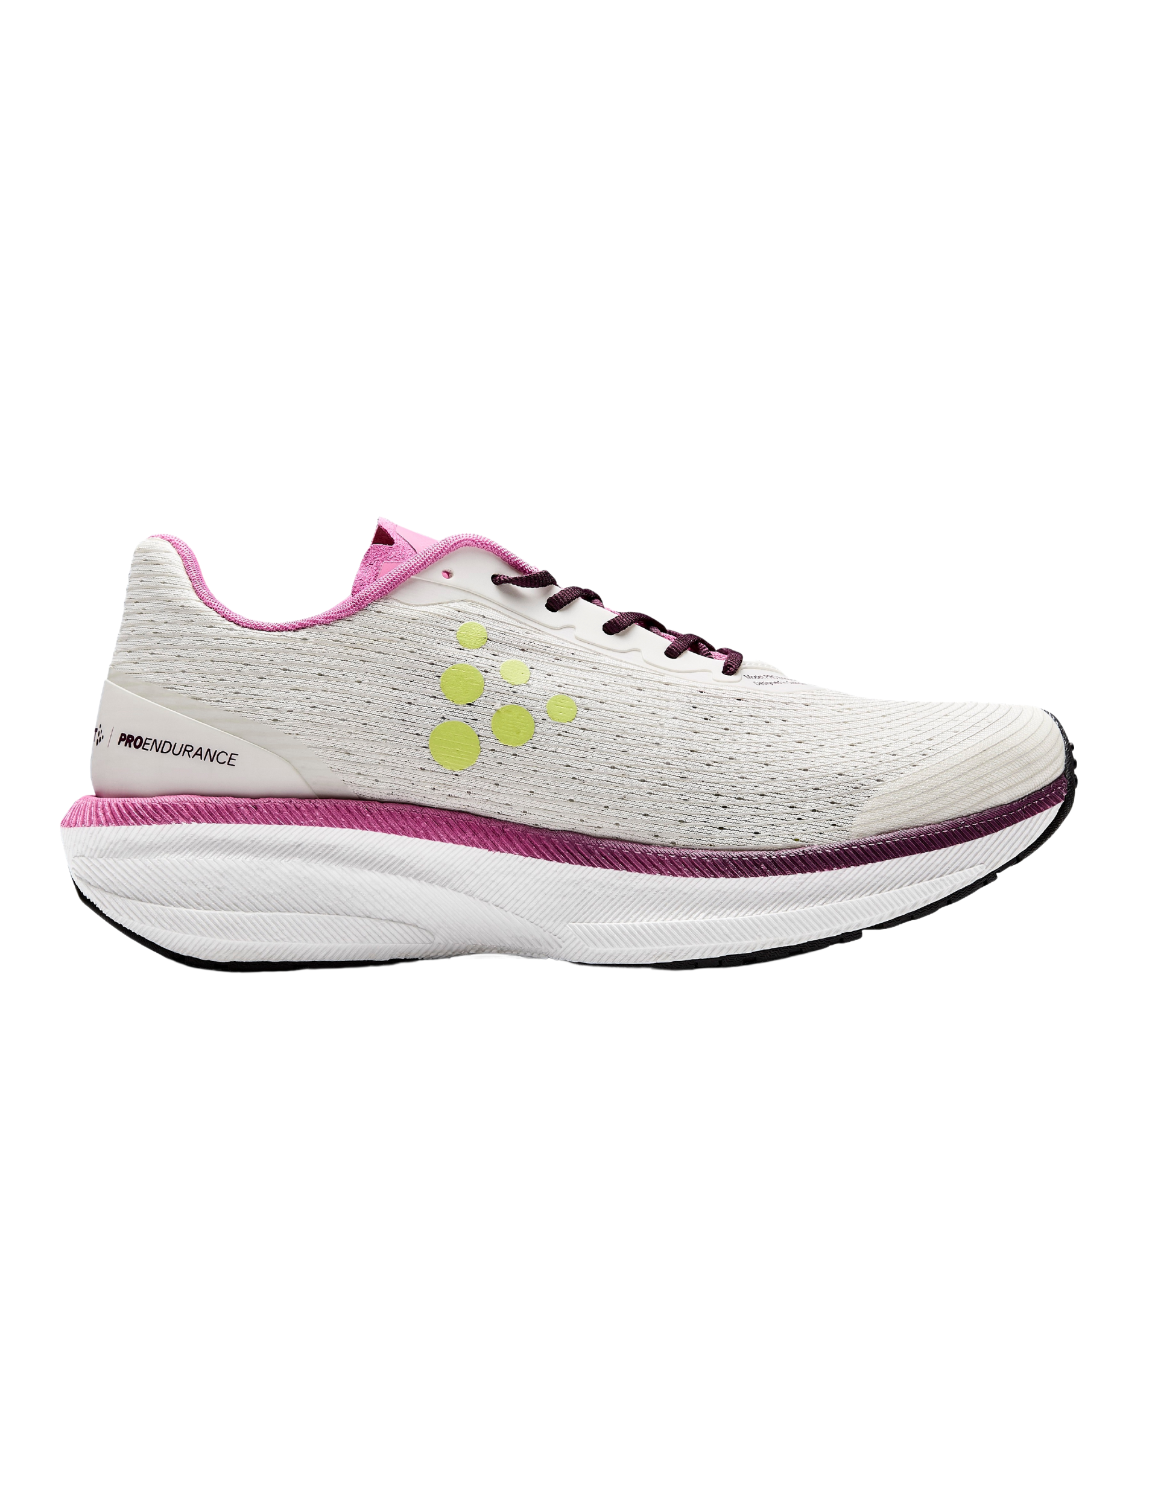 Chaussures de Running pour femme Craft Pro Endur Distance, drop 9 mm